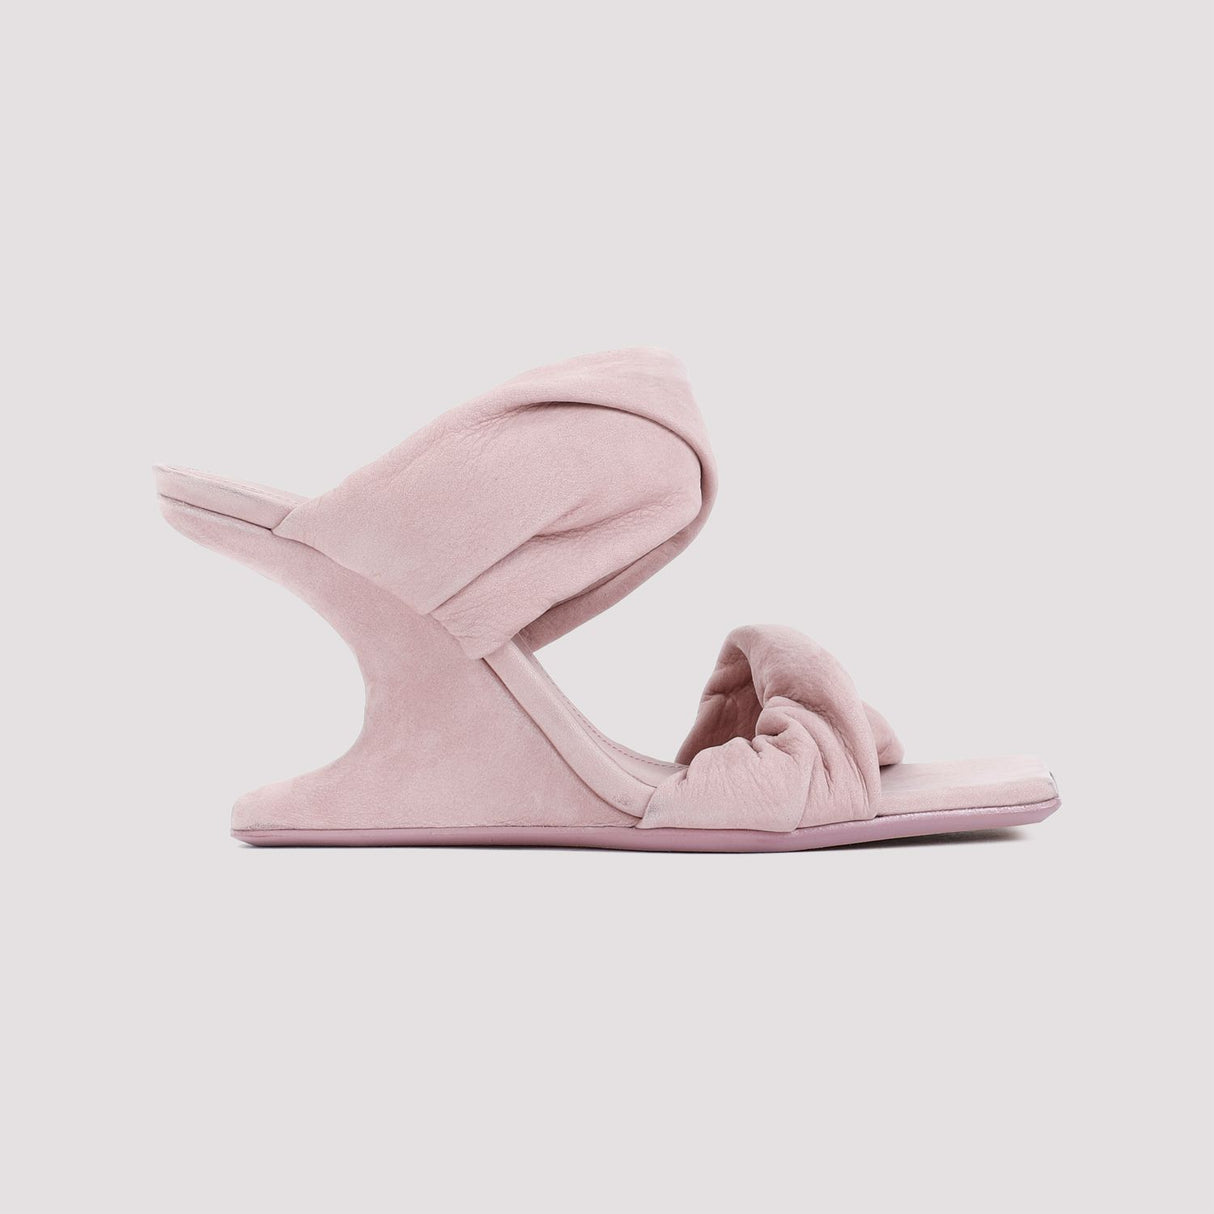 缠绕式双鞋跟女款粉紫色凉鞋